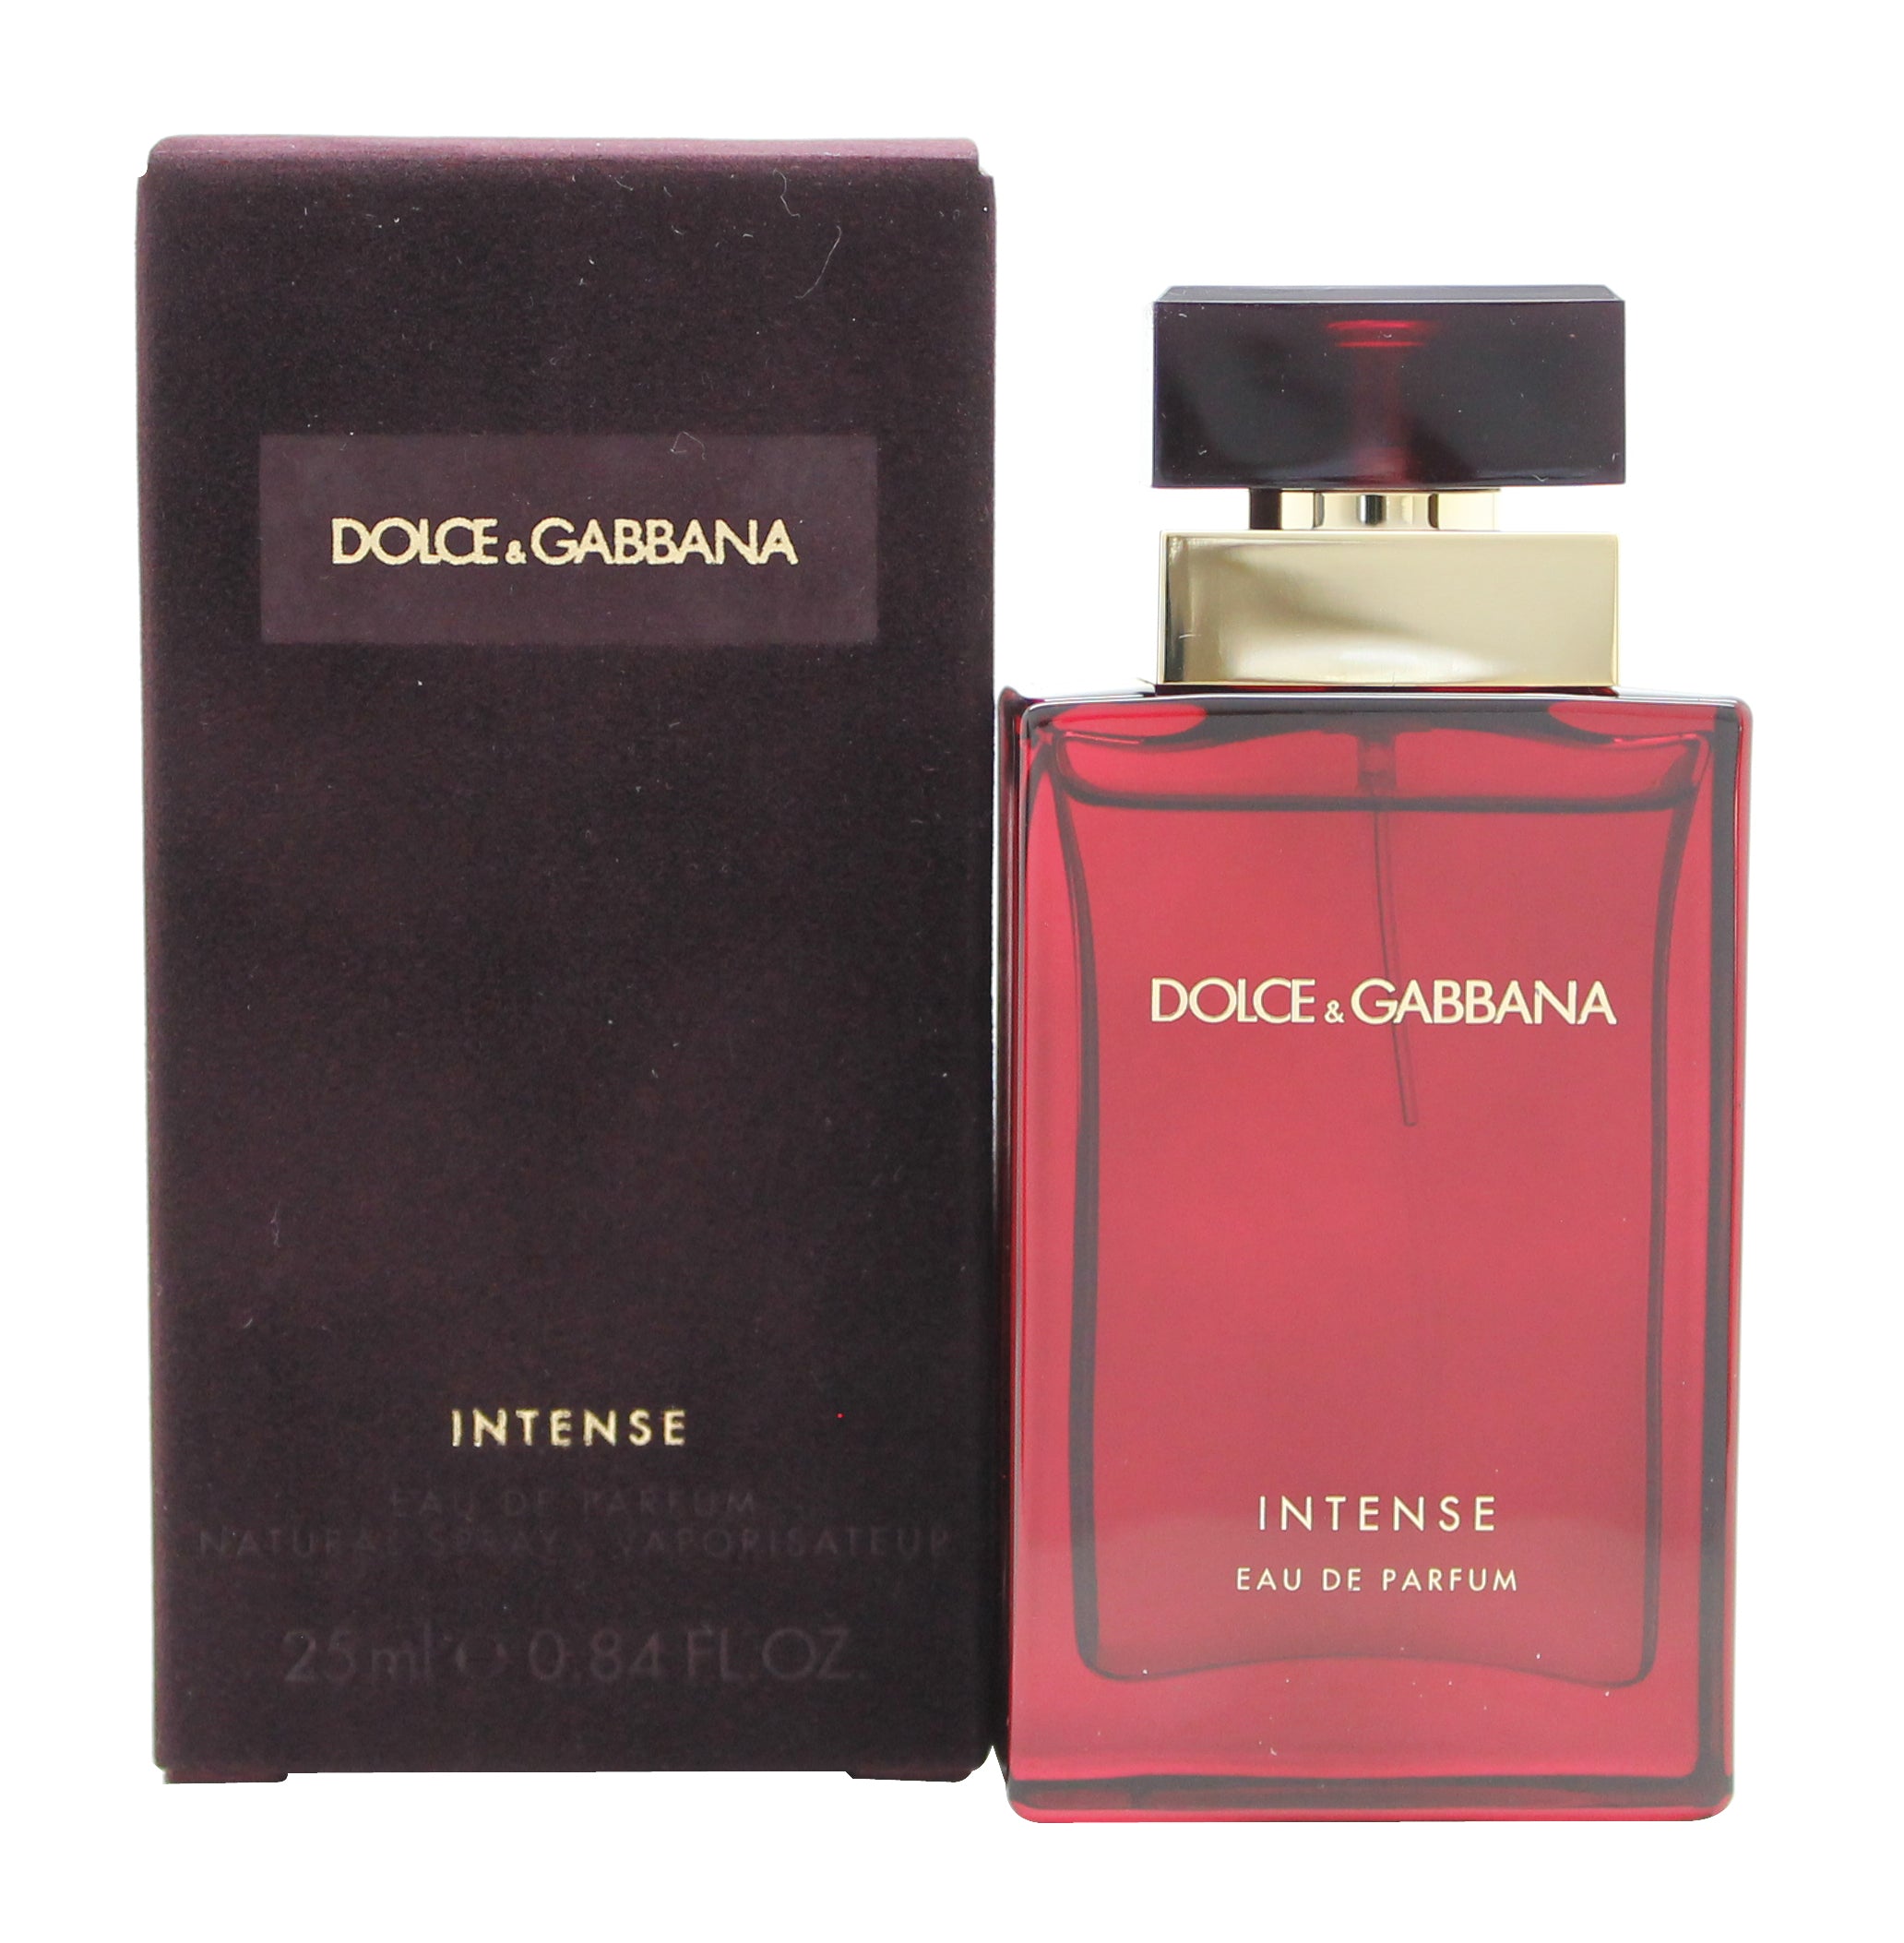 View Dolce Gabbana Pour Femme Intense Eau de Parfum 25ml Spray information